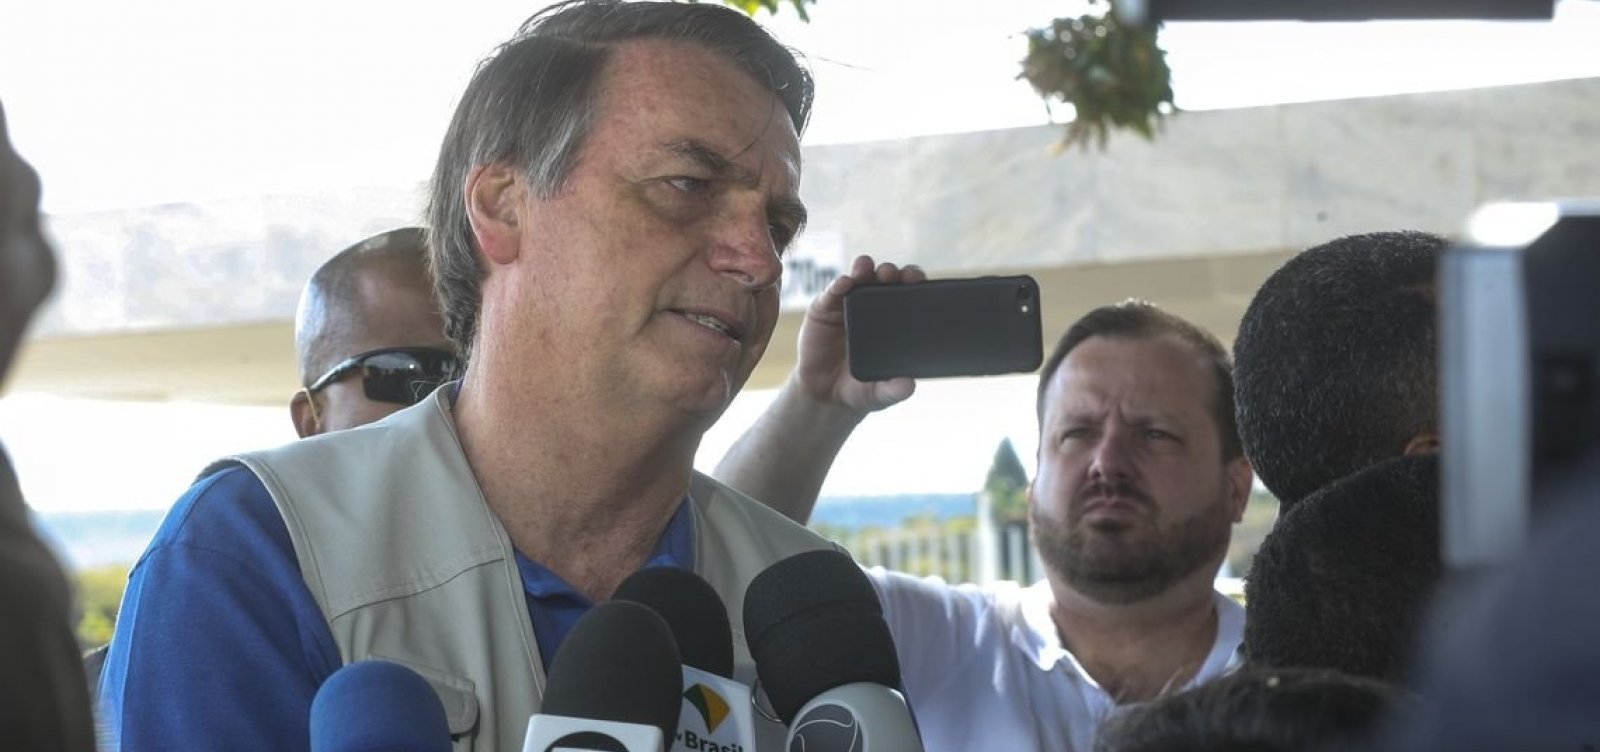 ['VocÃª acredita em ComissÃ£o da Verdade?', diz Bolsonaro sobre morte de pai do presidente da OAB]